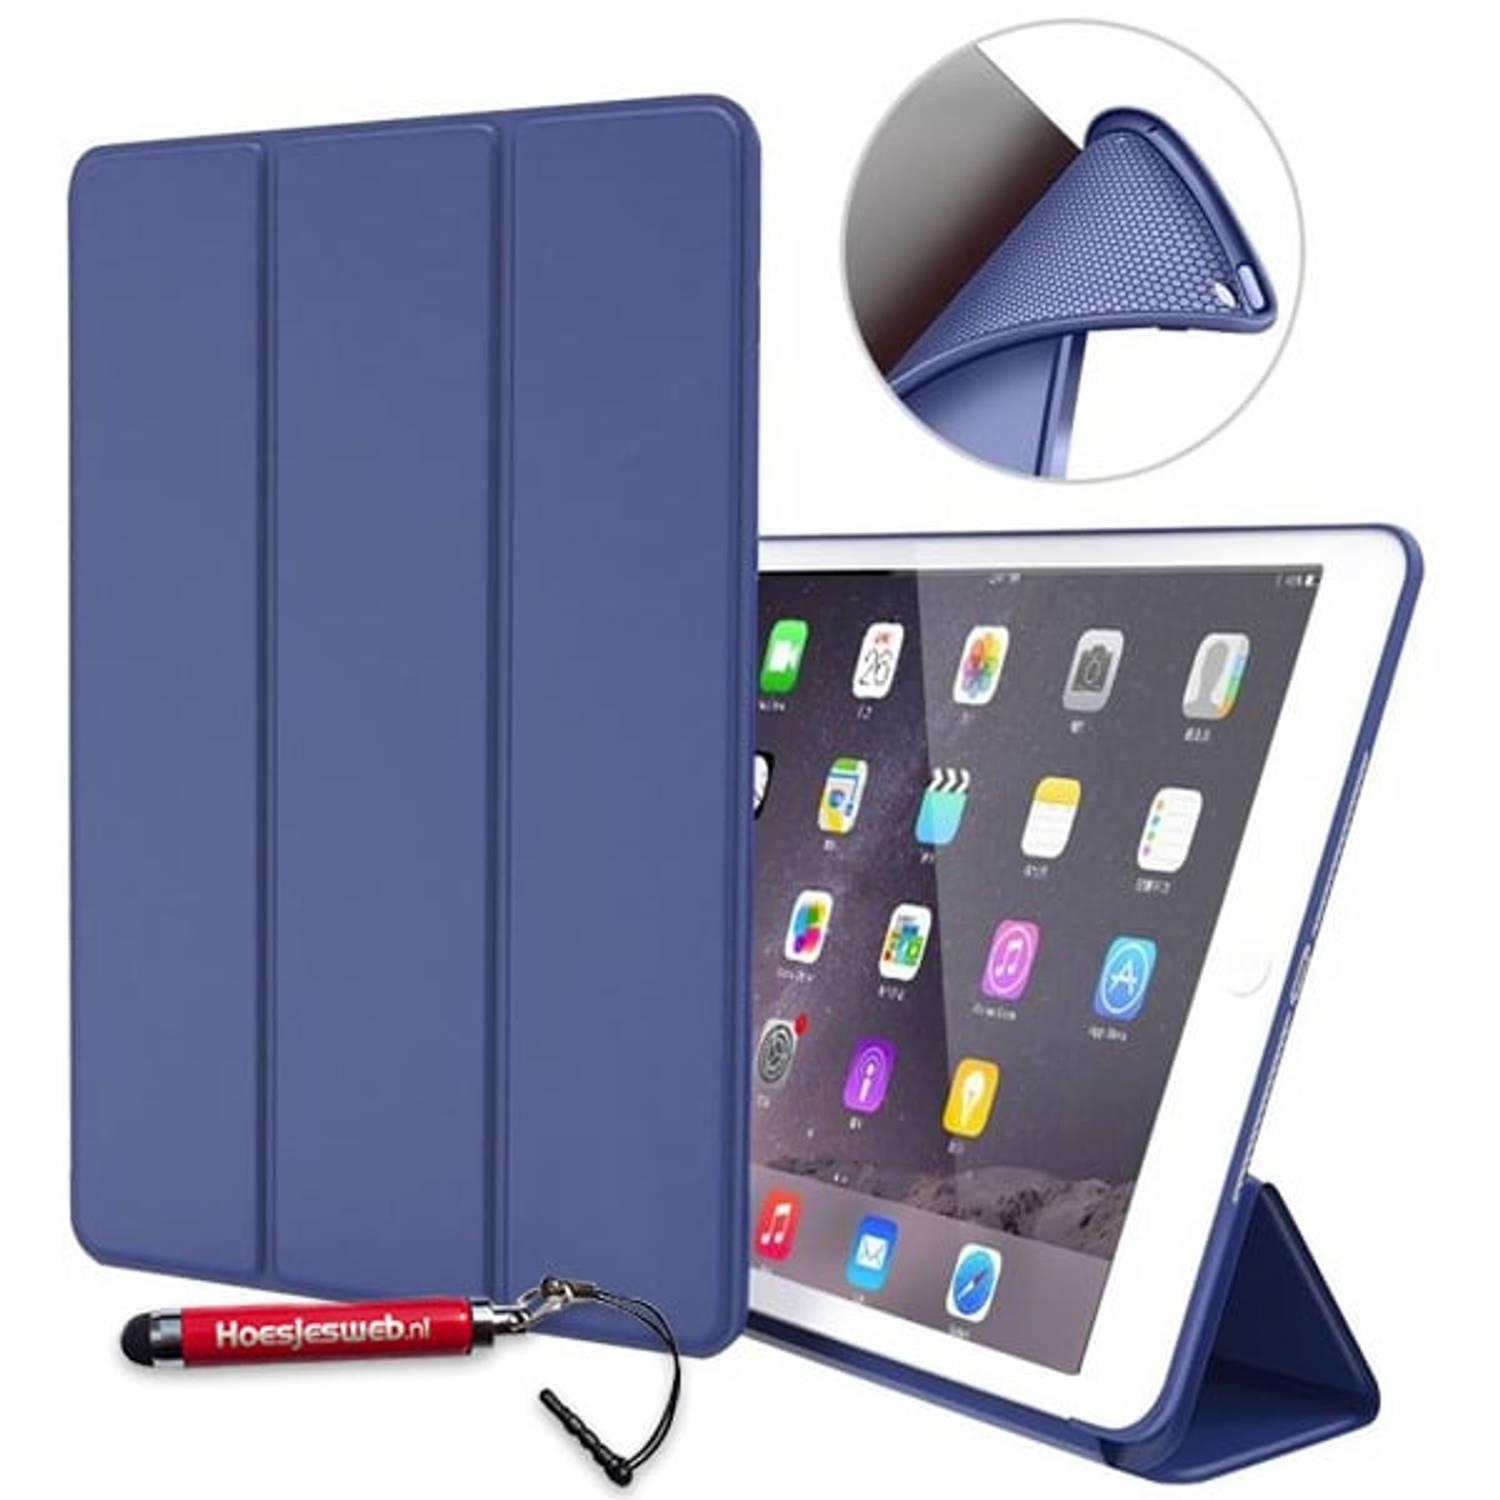 Hem Apple Ipad Air 2 Bookcover Donkerblauw Met Siliconenachterkant En Hoesjeswebstylus